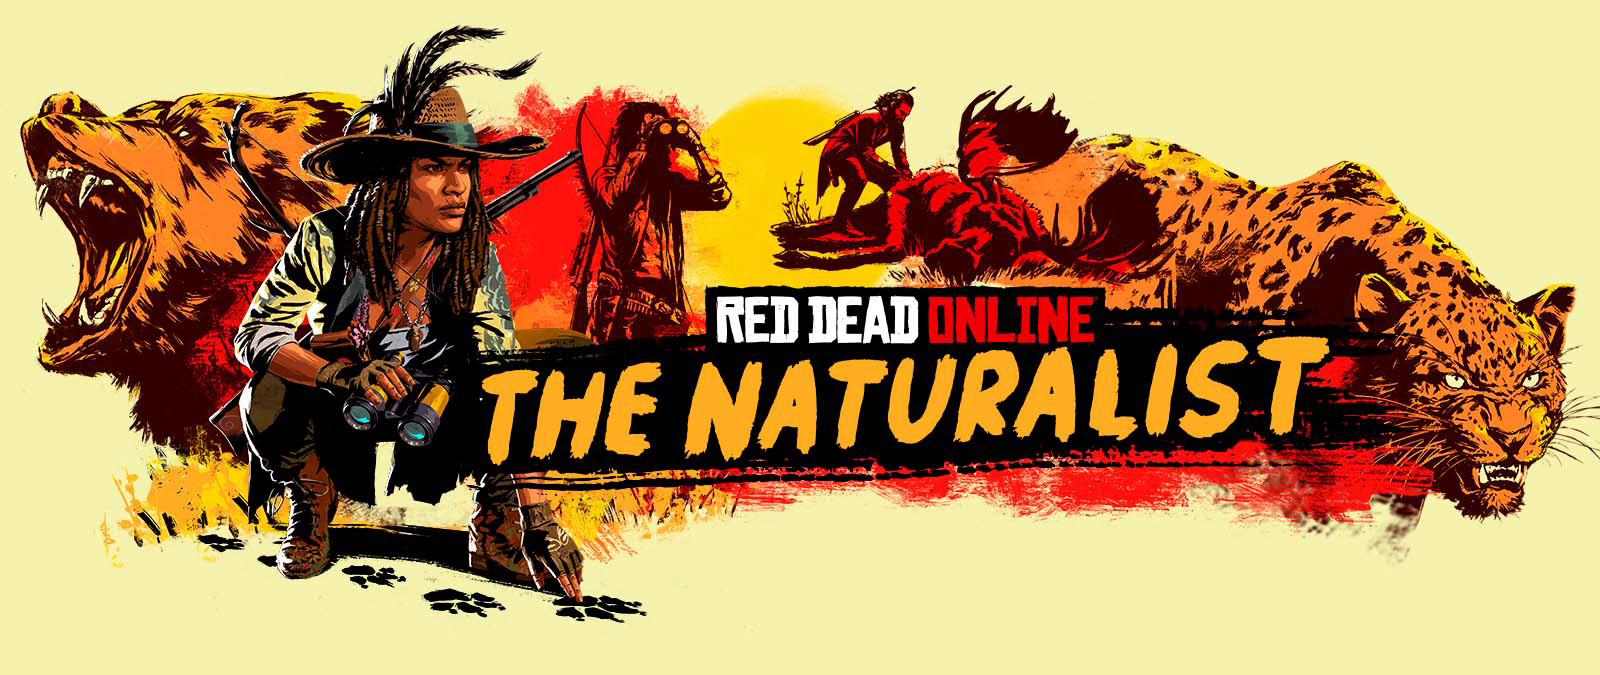 Red Dead Online. The Naturalist. Karaktärer som spårar och jagar stora djur.